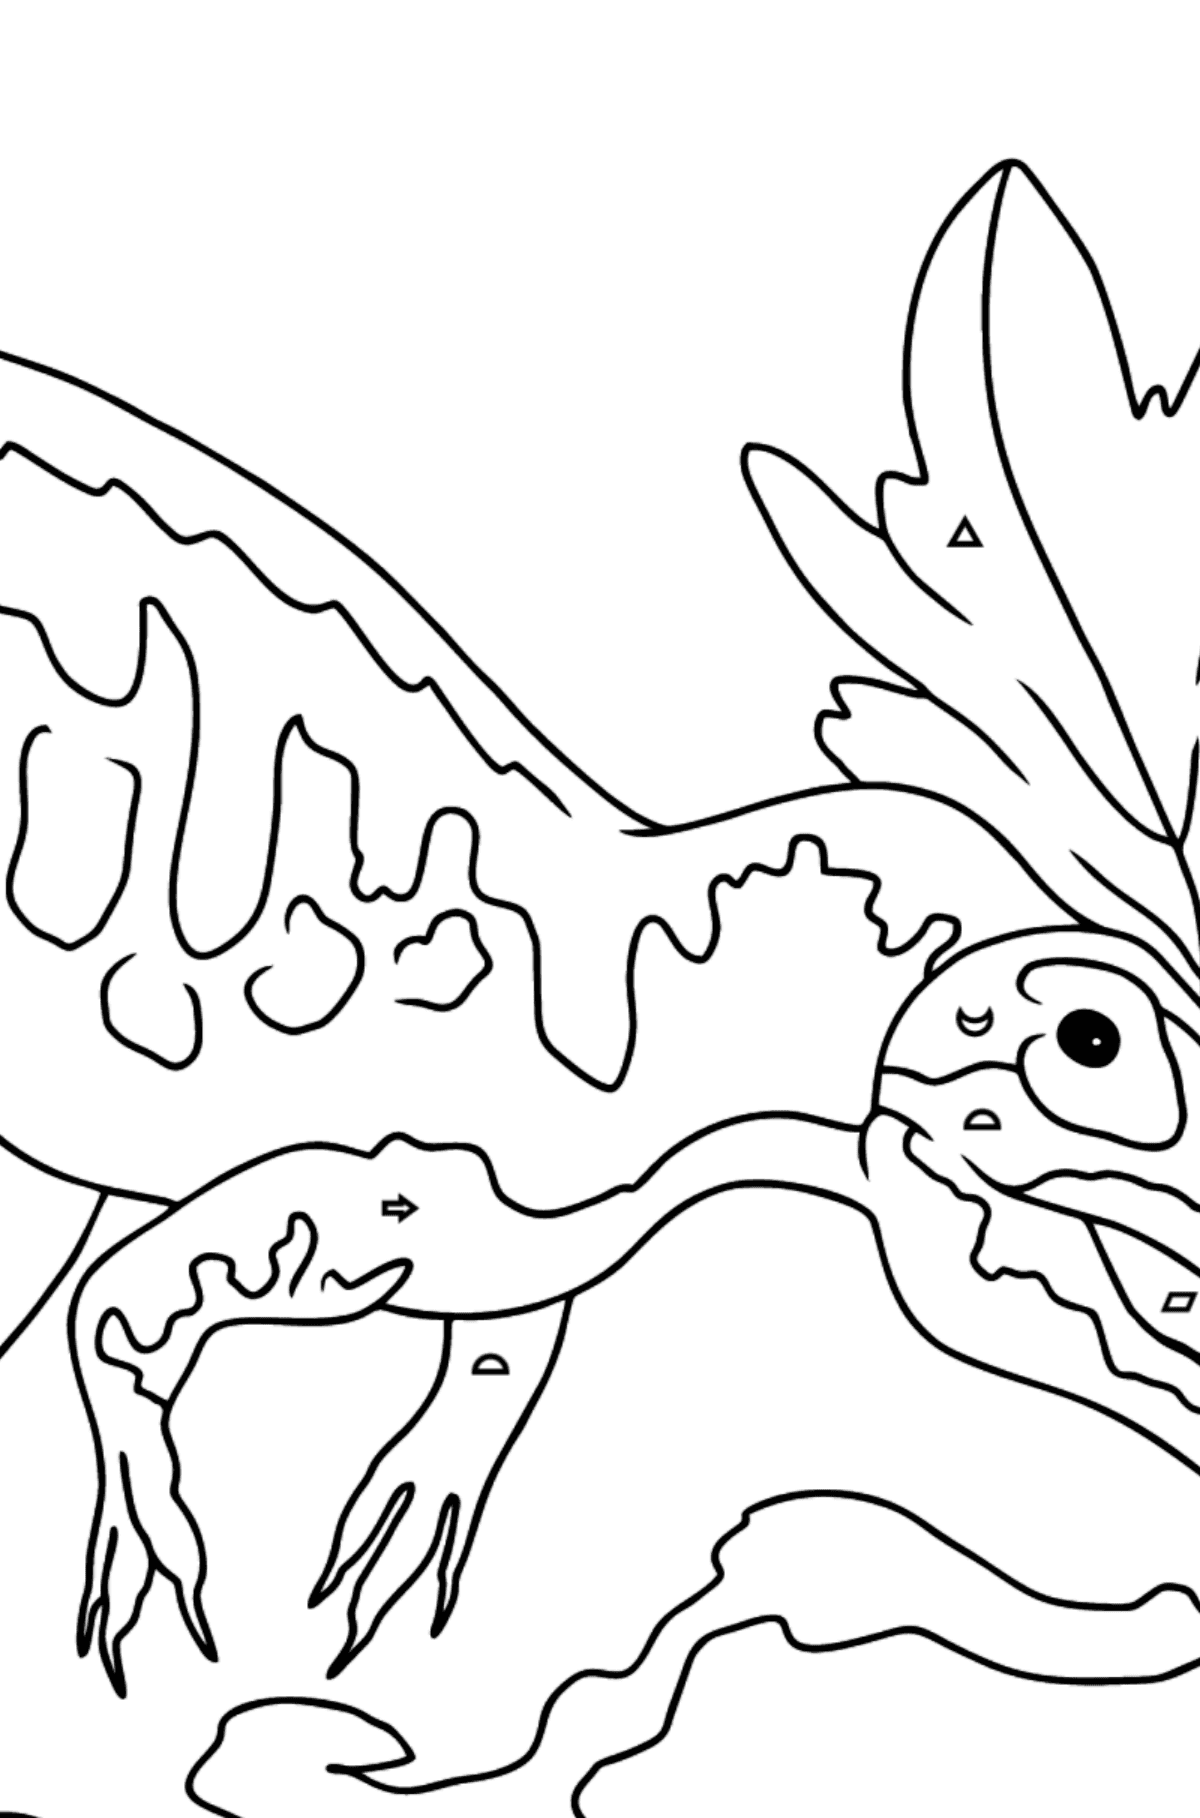 Раскраска Аллозавр для детей - Картинка высокого качества для Детей